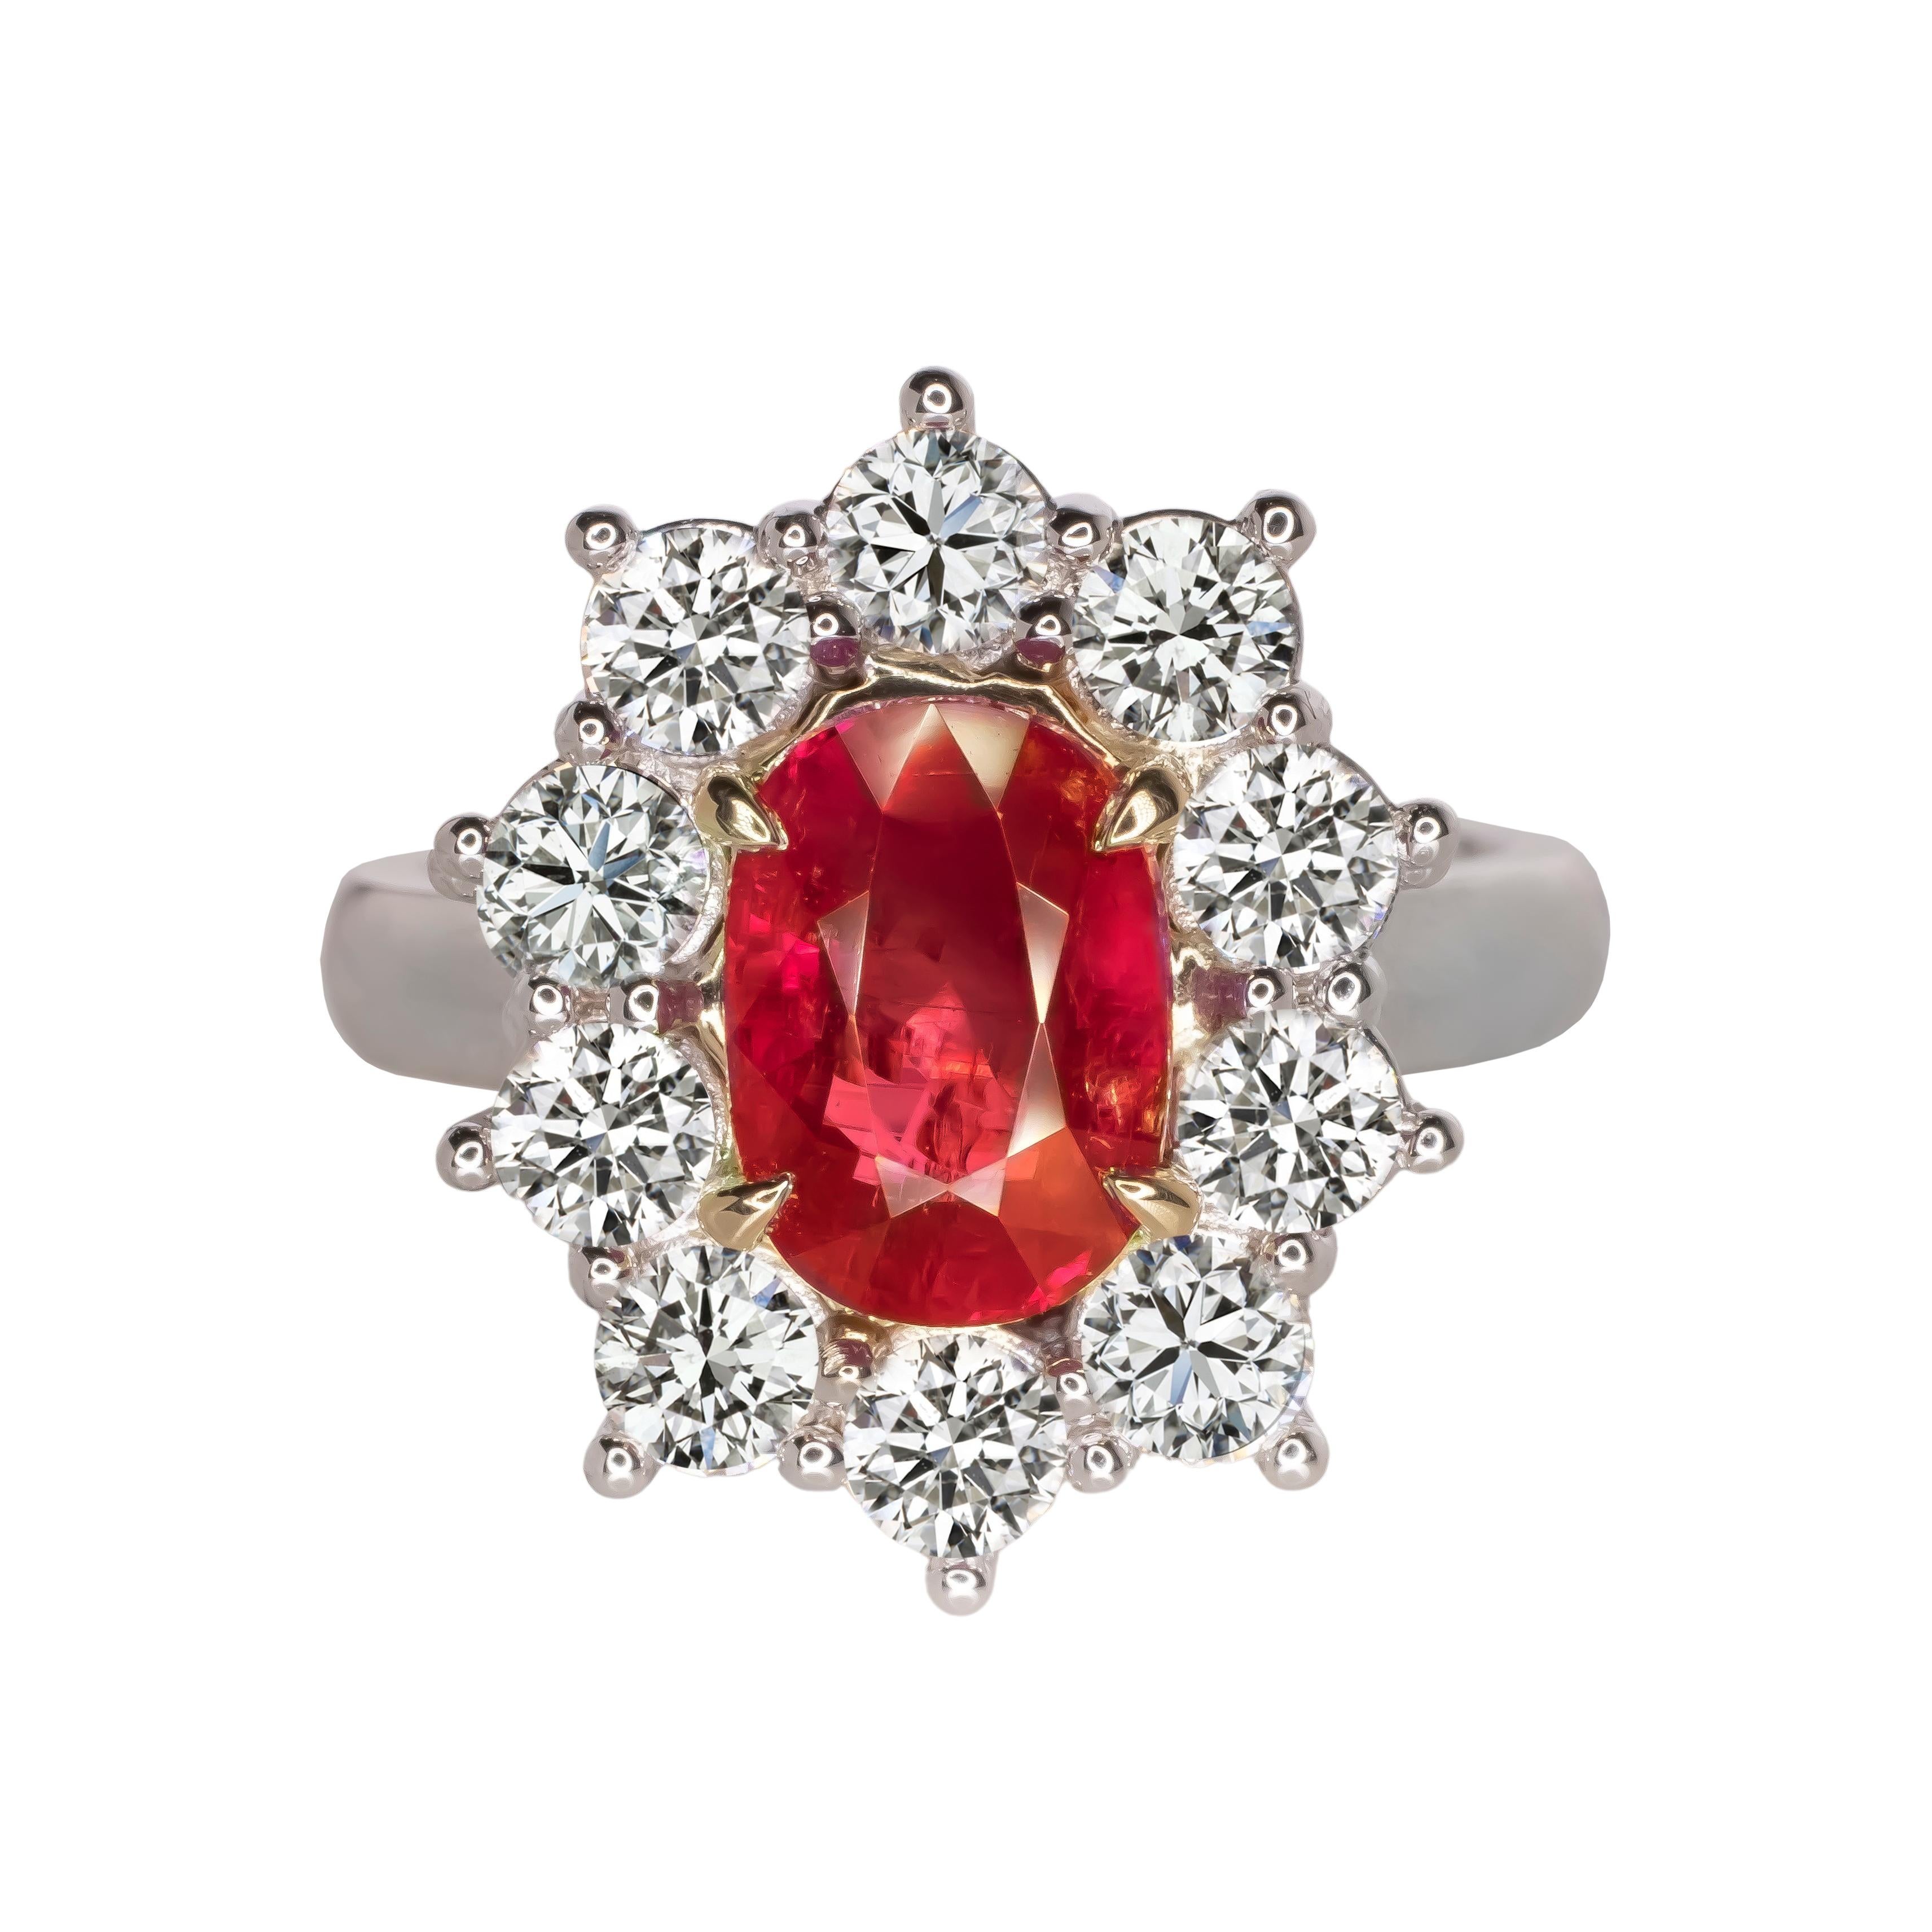 Dans ce remarquable bijou, un rubis ovale de 4,21 carats, d'une teinte rouge sang pourpre, certifié par la très estimée GRS Switzerland, occupe le devant de la scène. Serti dans un opulent boîtier en or jaune et blanc 18 carats.  Cette magnifique